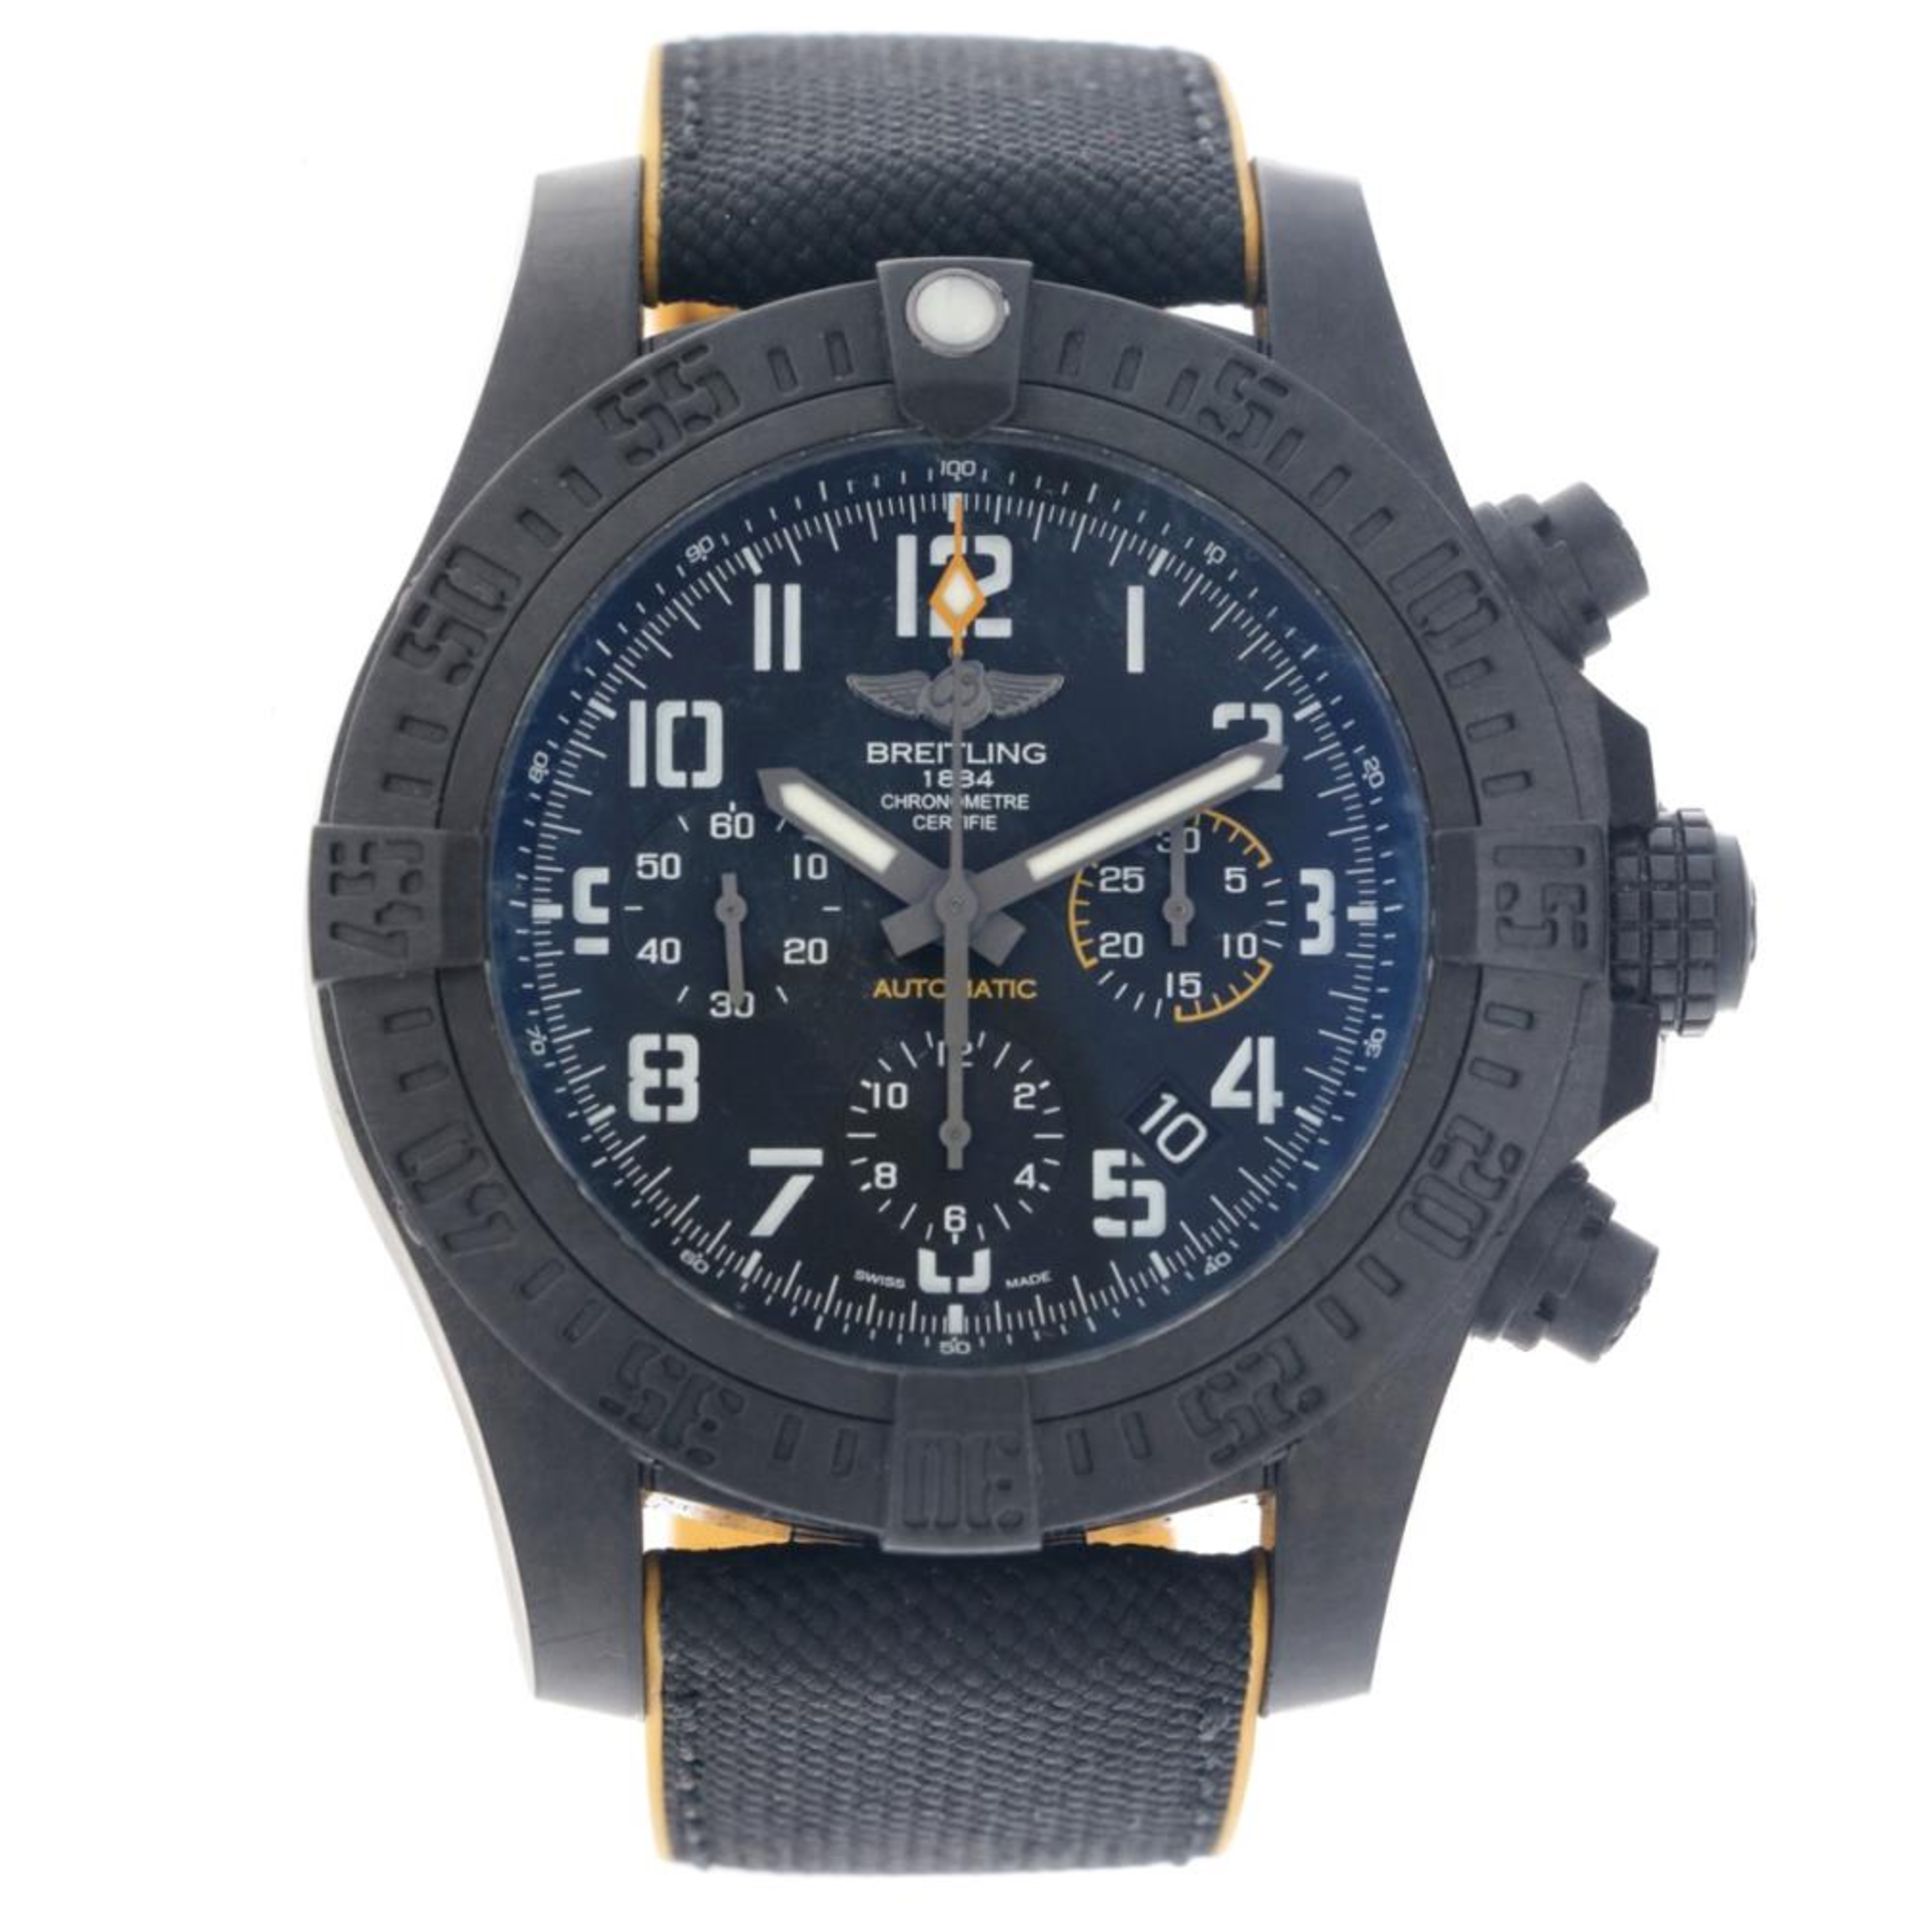 Breitling Avenger Hurricane XB0180E4 - Men's watch - 2019.